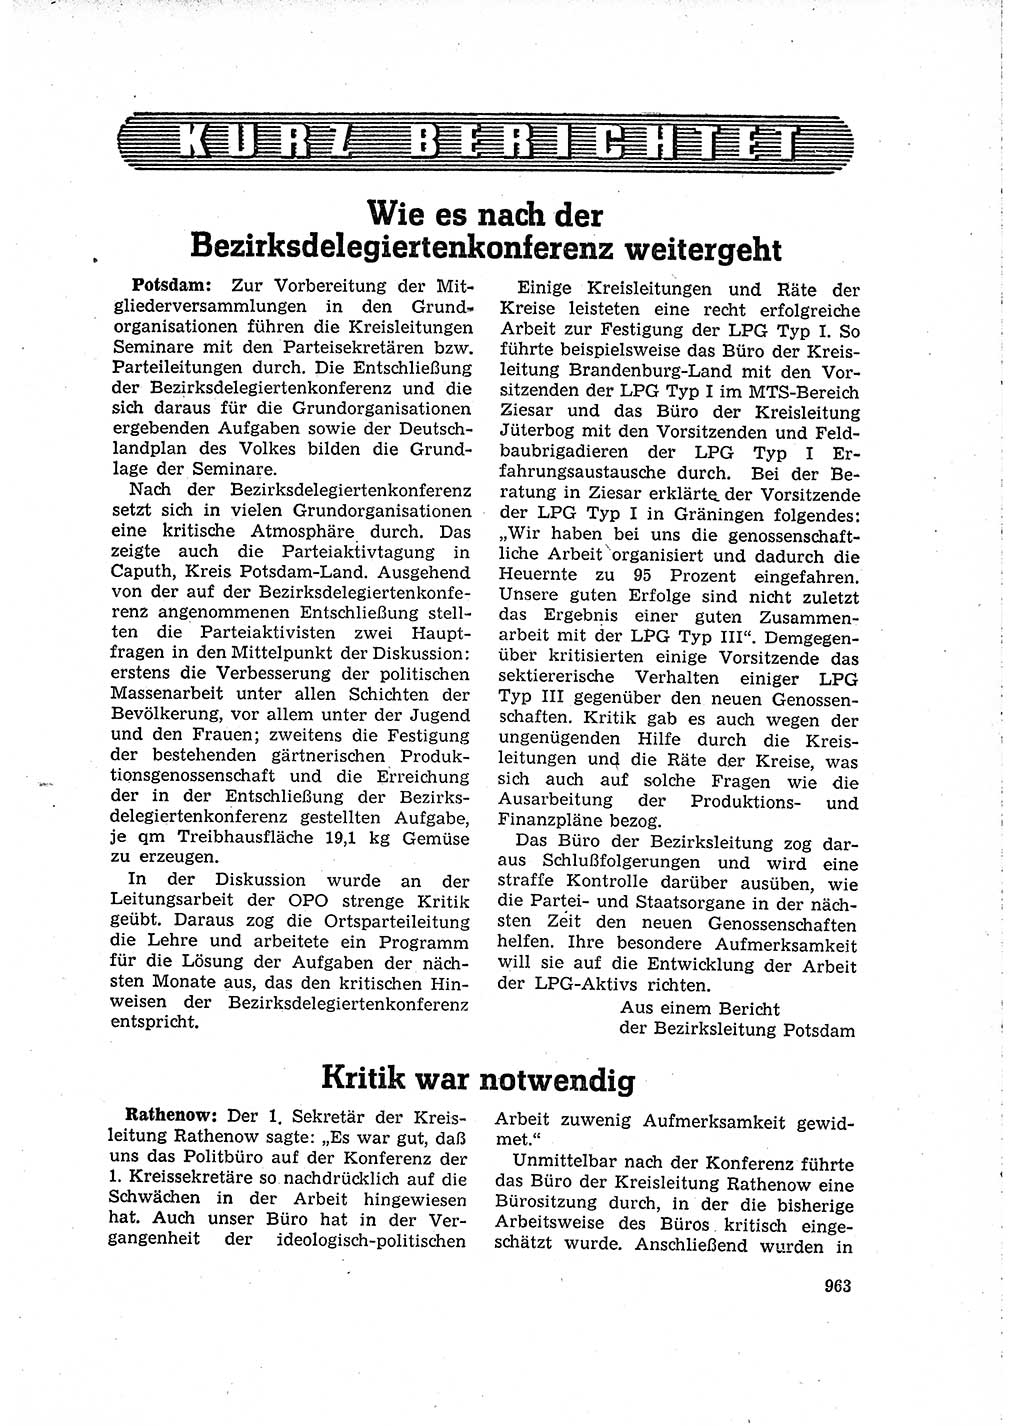 Neuer Weg (NW), Organ des Zentralkomitees (ZK) der SED (Sozialistische Einheitspartei Deutschlands) für Fragen des Parteilebens, 15. Jahrgang [Deutsche Demokratische Republik (DDR)] 1960, Seite 963 (NW ZK SED DDR 1960, S. 963)